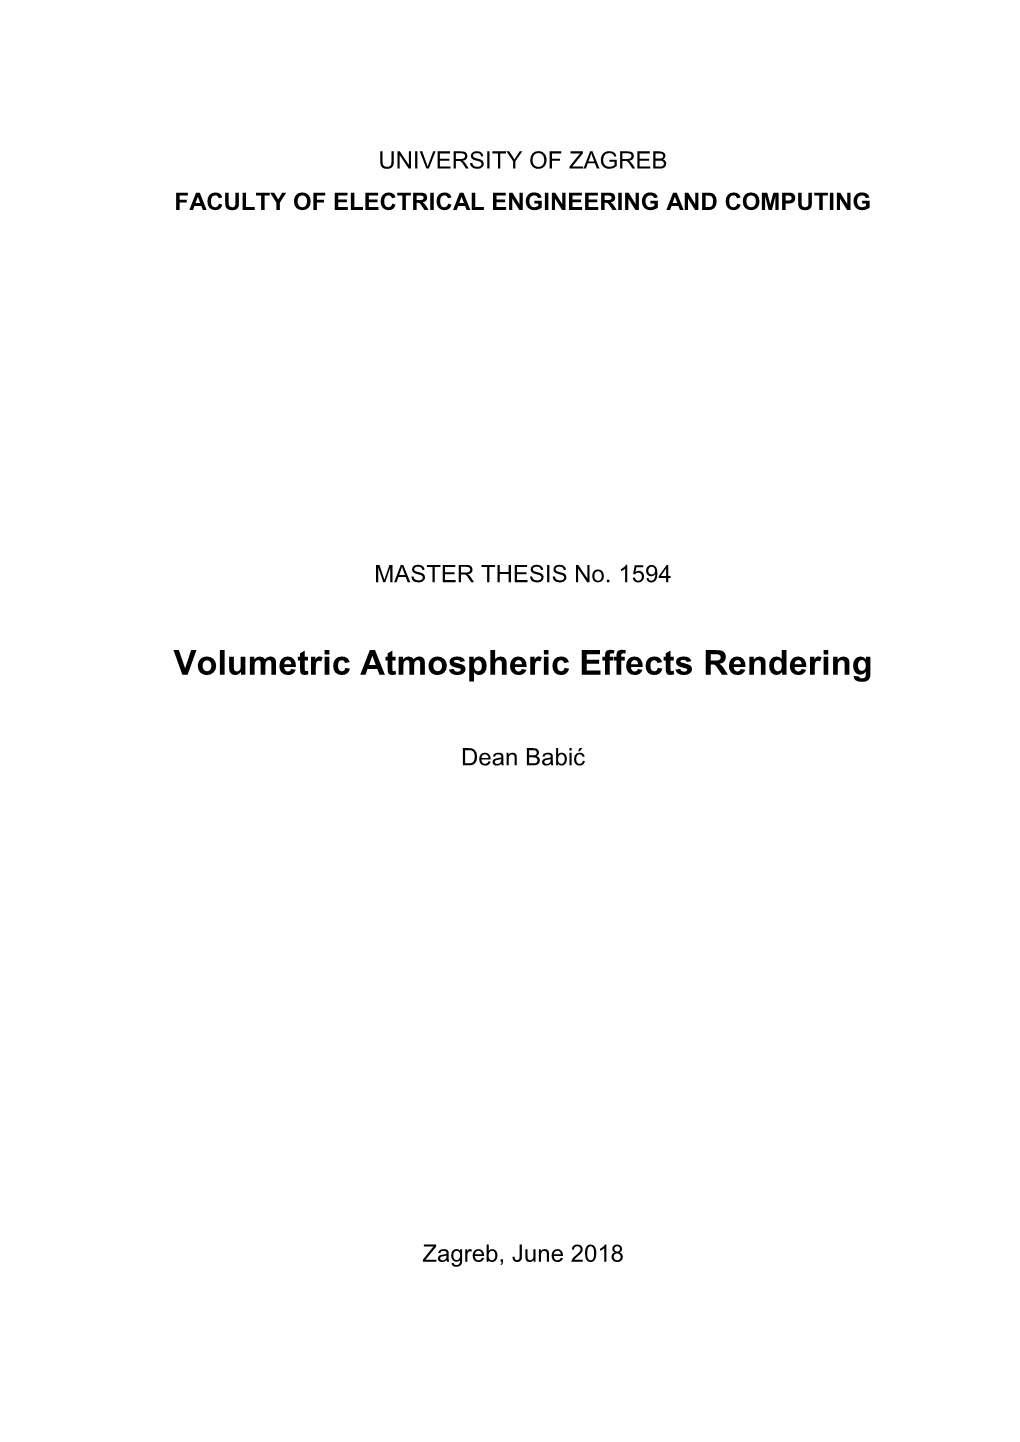 Volumetric Atmospheric Effects Rendering